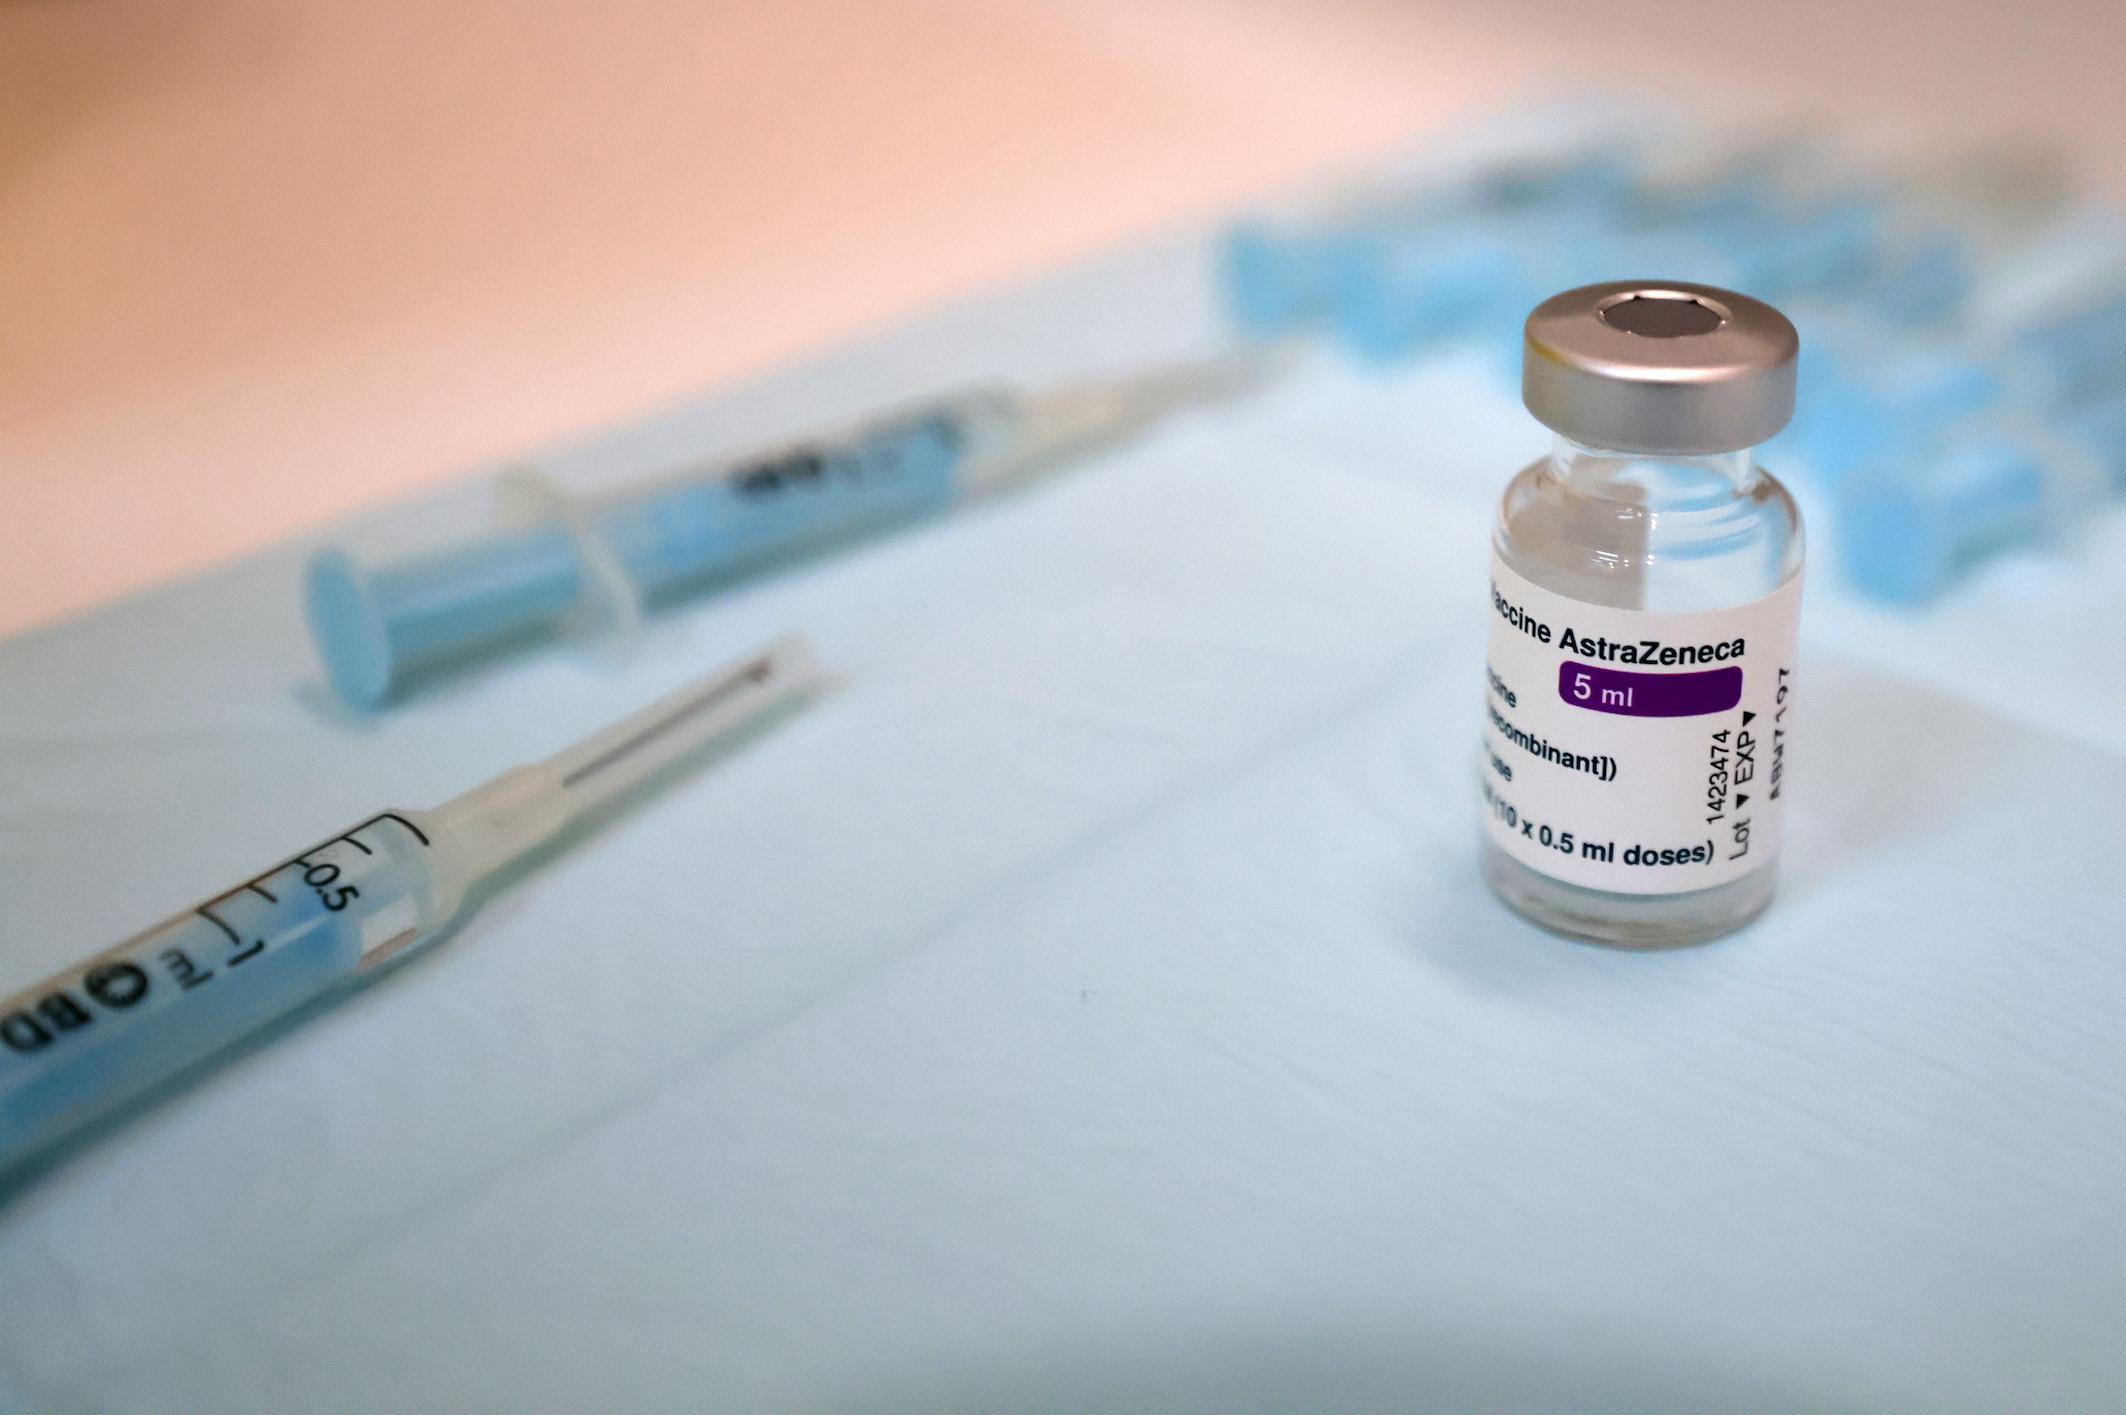 SII India akan mengurangi separuh produksi vaksin AstraZeneca karena permintaan menurun —laporan GMA News Online